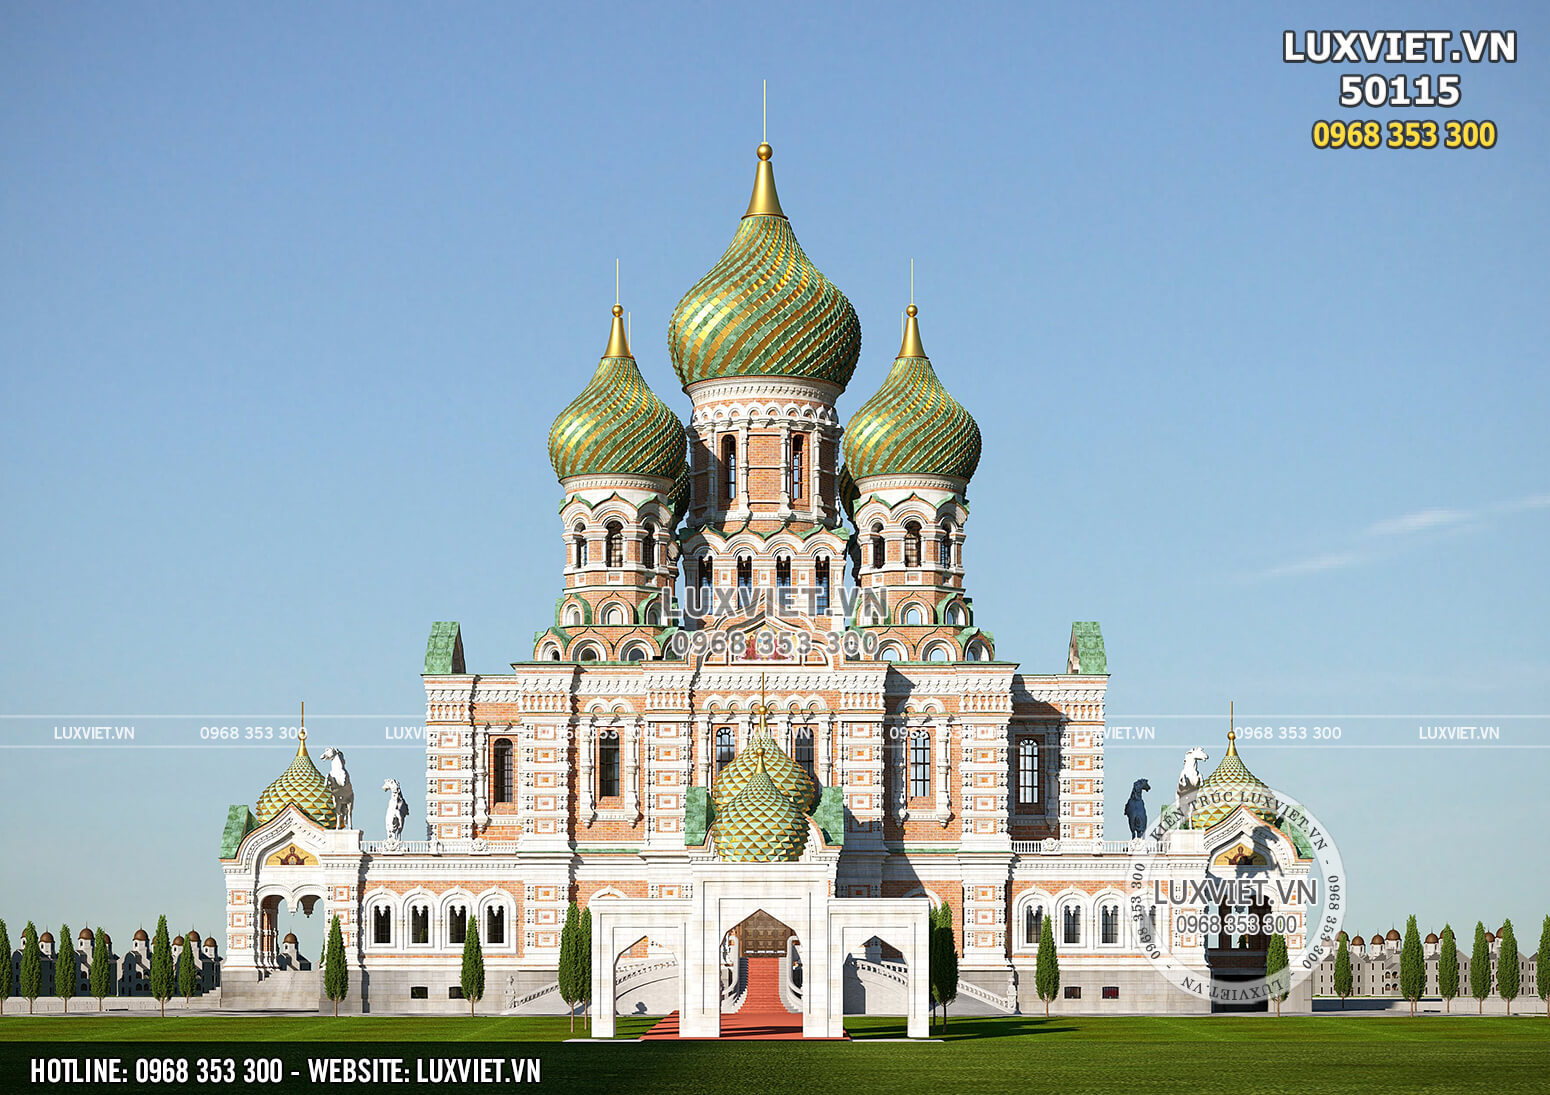 Hình ảnh: Lâu đài Nga hoành tráng và kiên cố - LV 50115